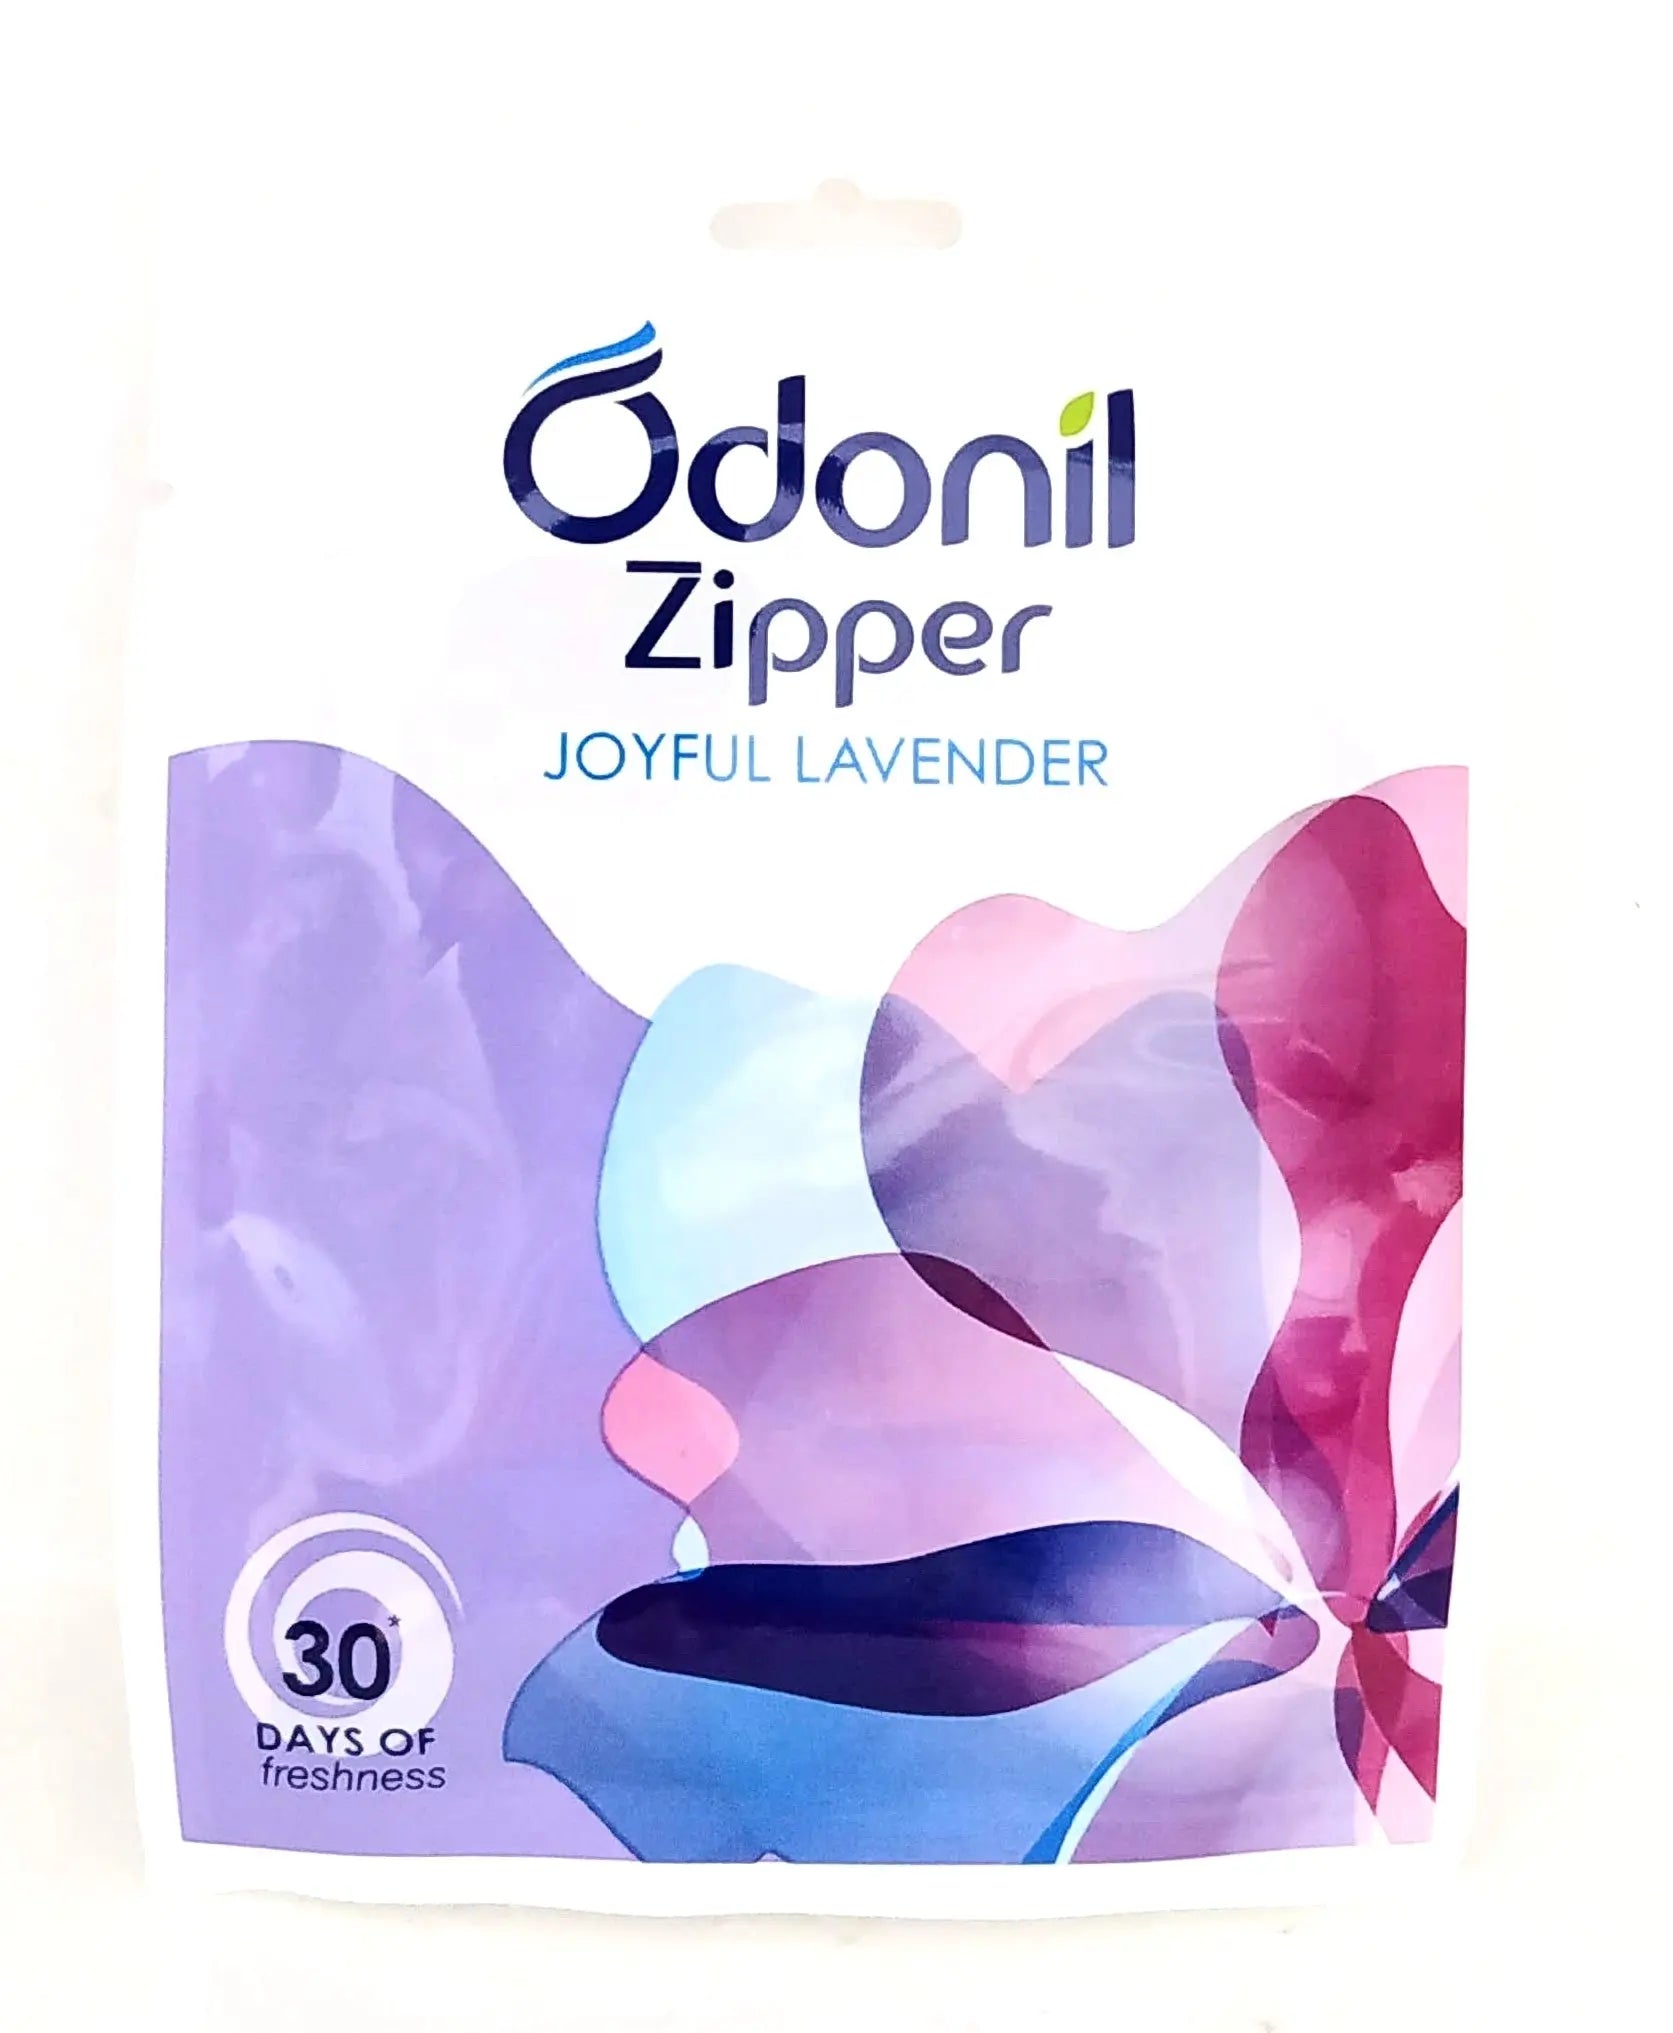 Odonil Zipper - Joyful Lavender Dabur